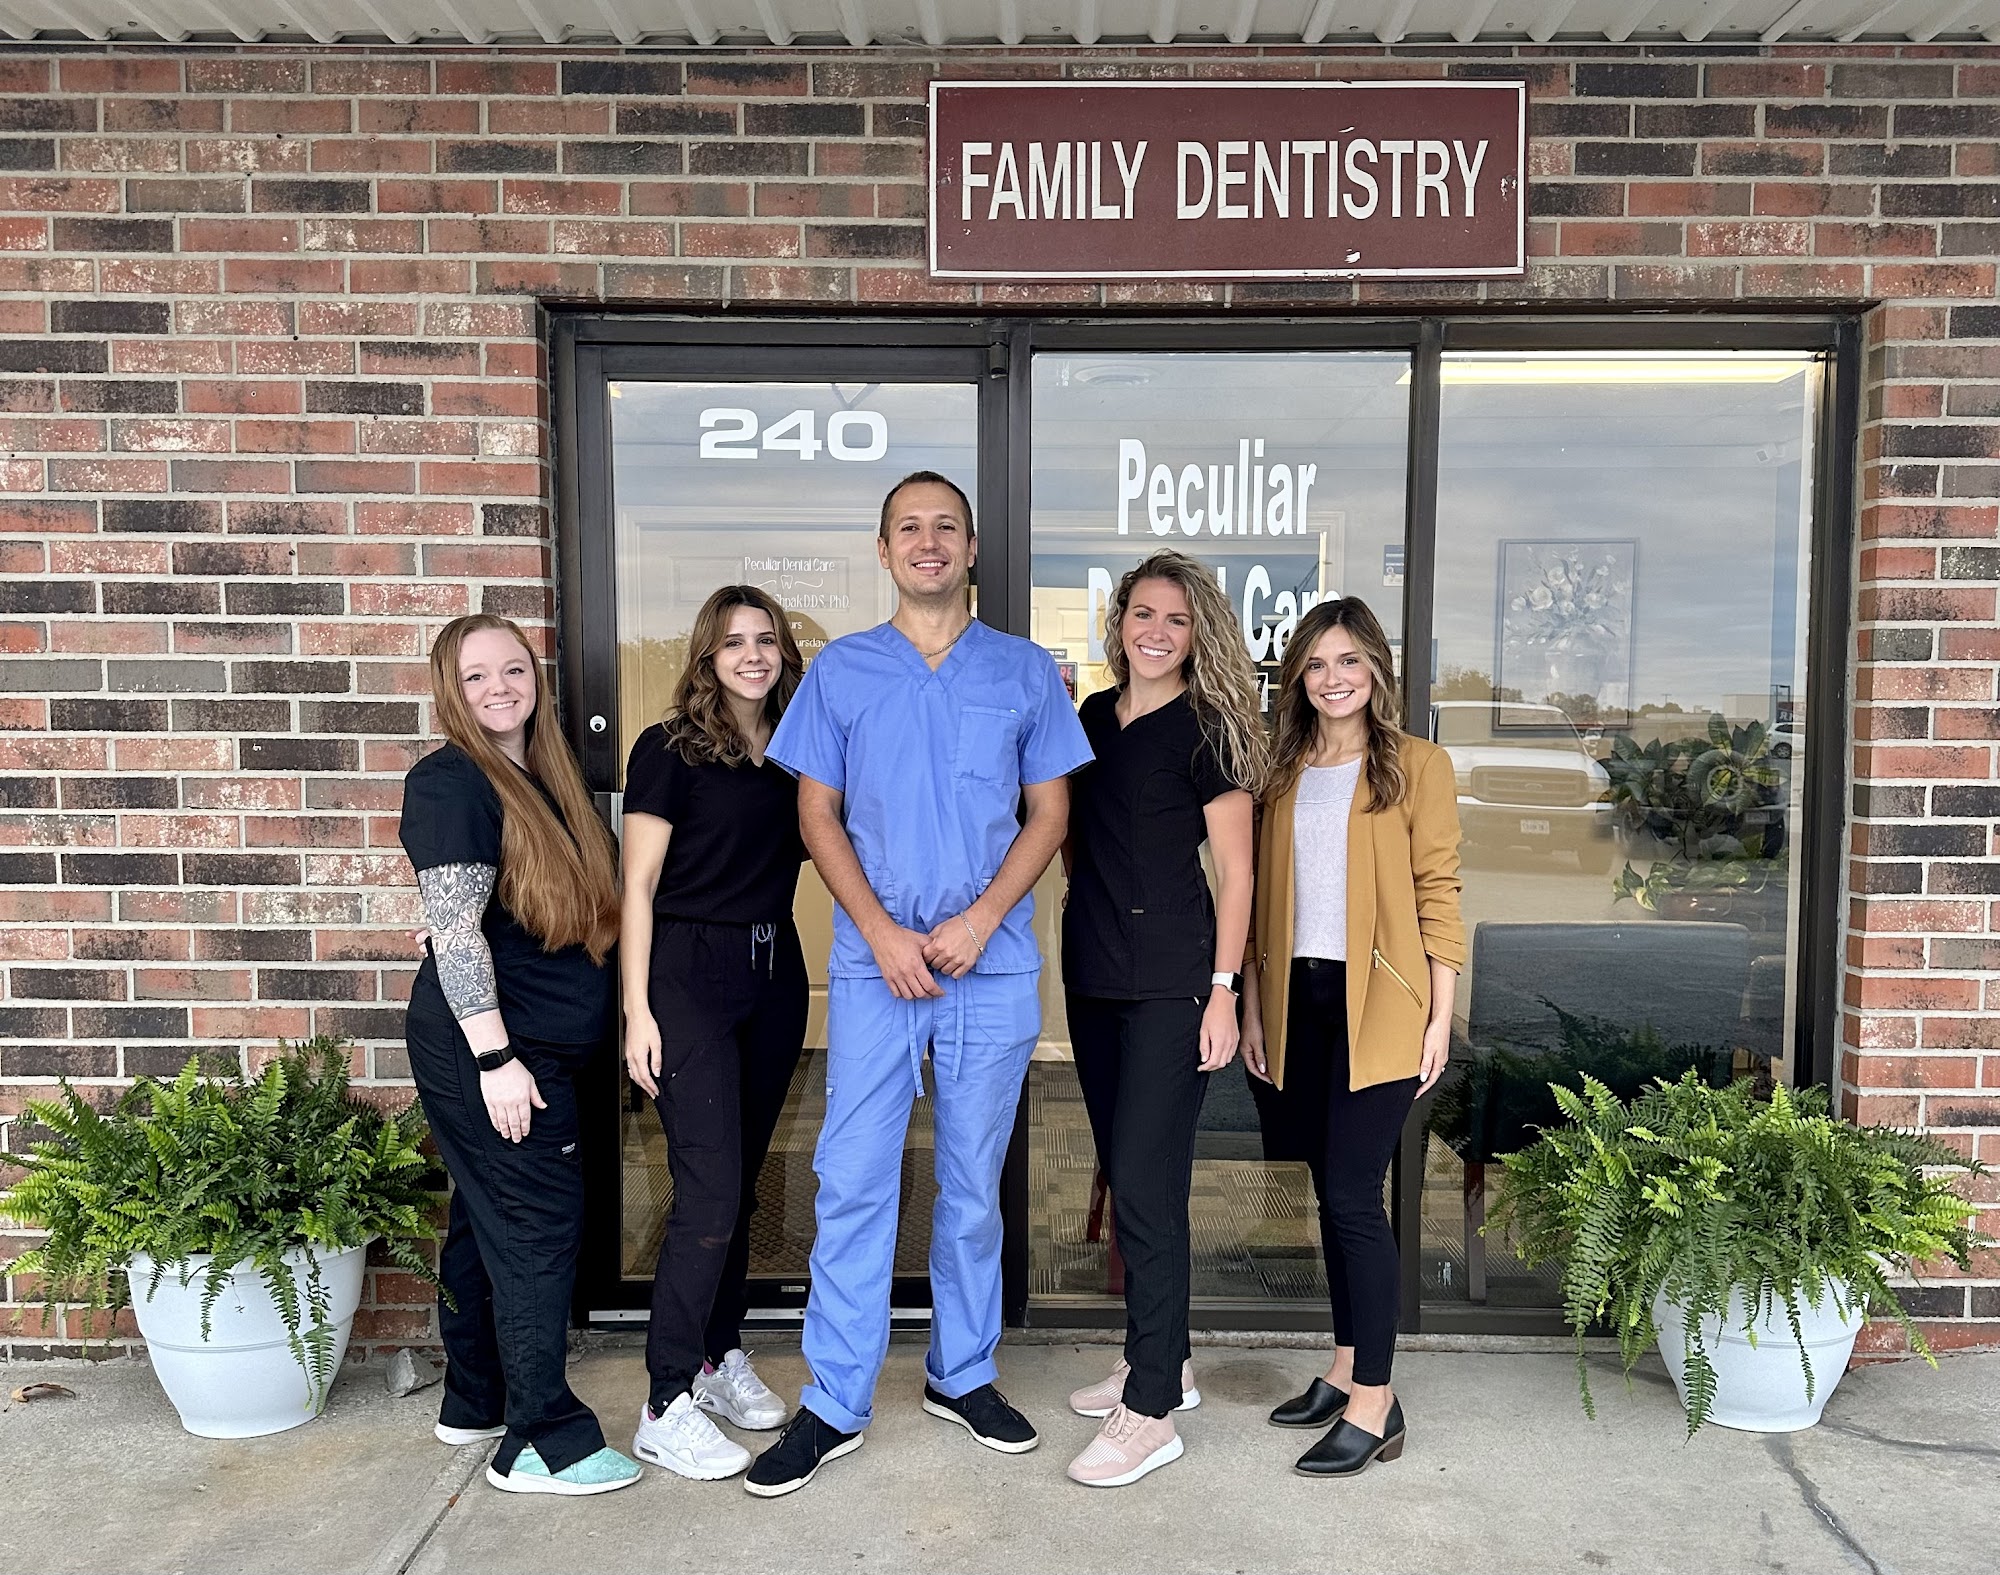 Peculiar Dental Care 240 State Hwy C, Peculiar Missouri 64078